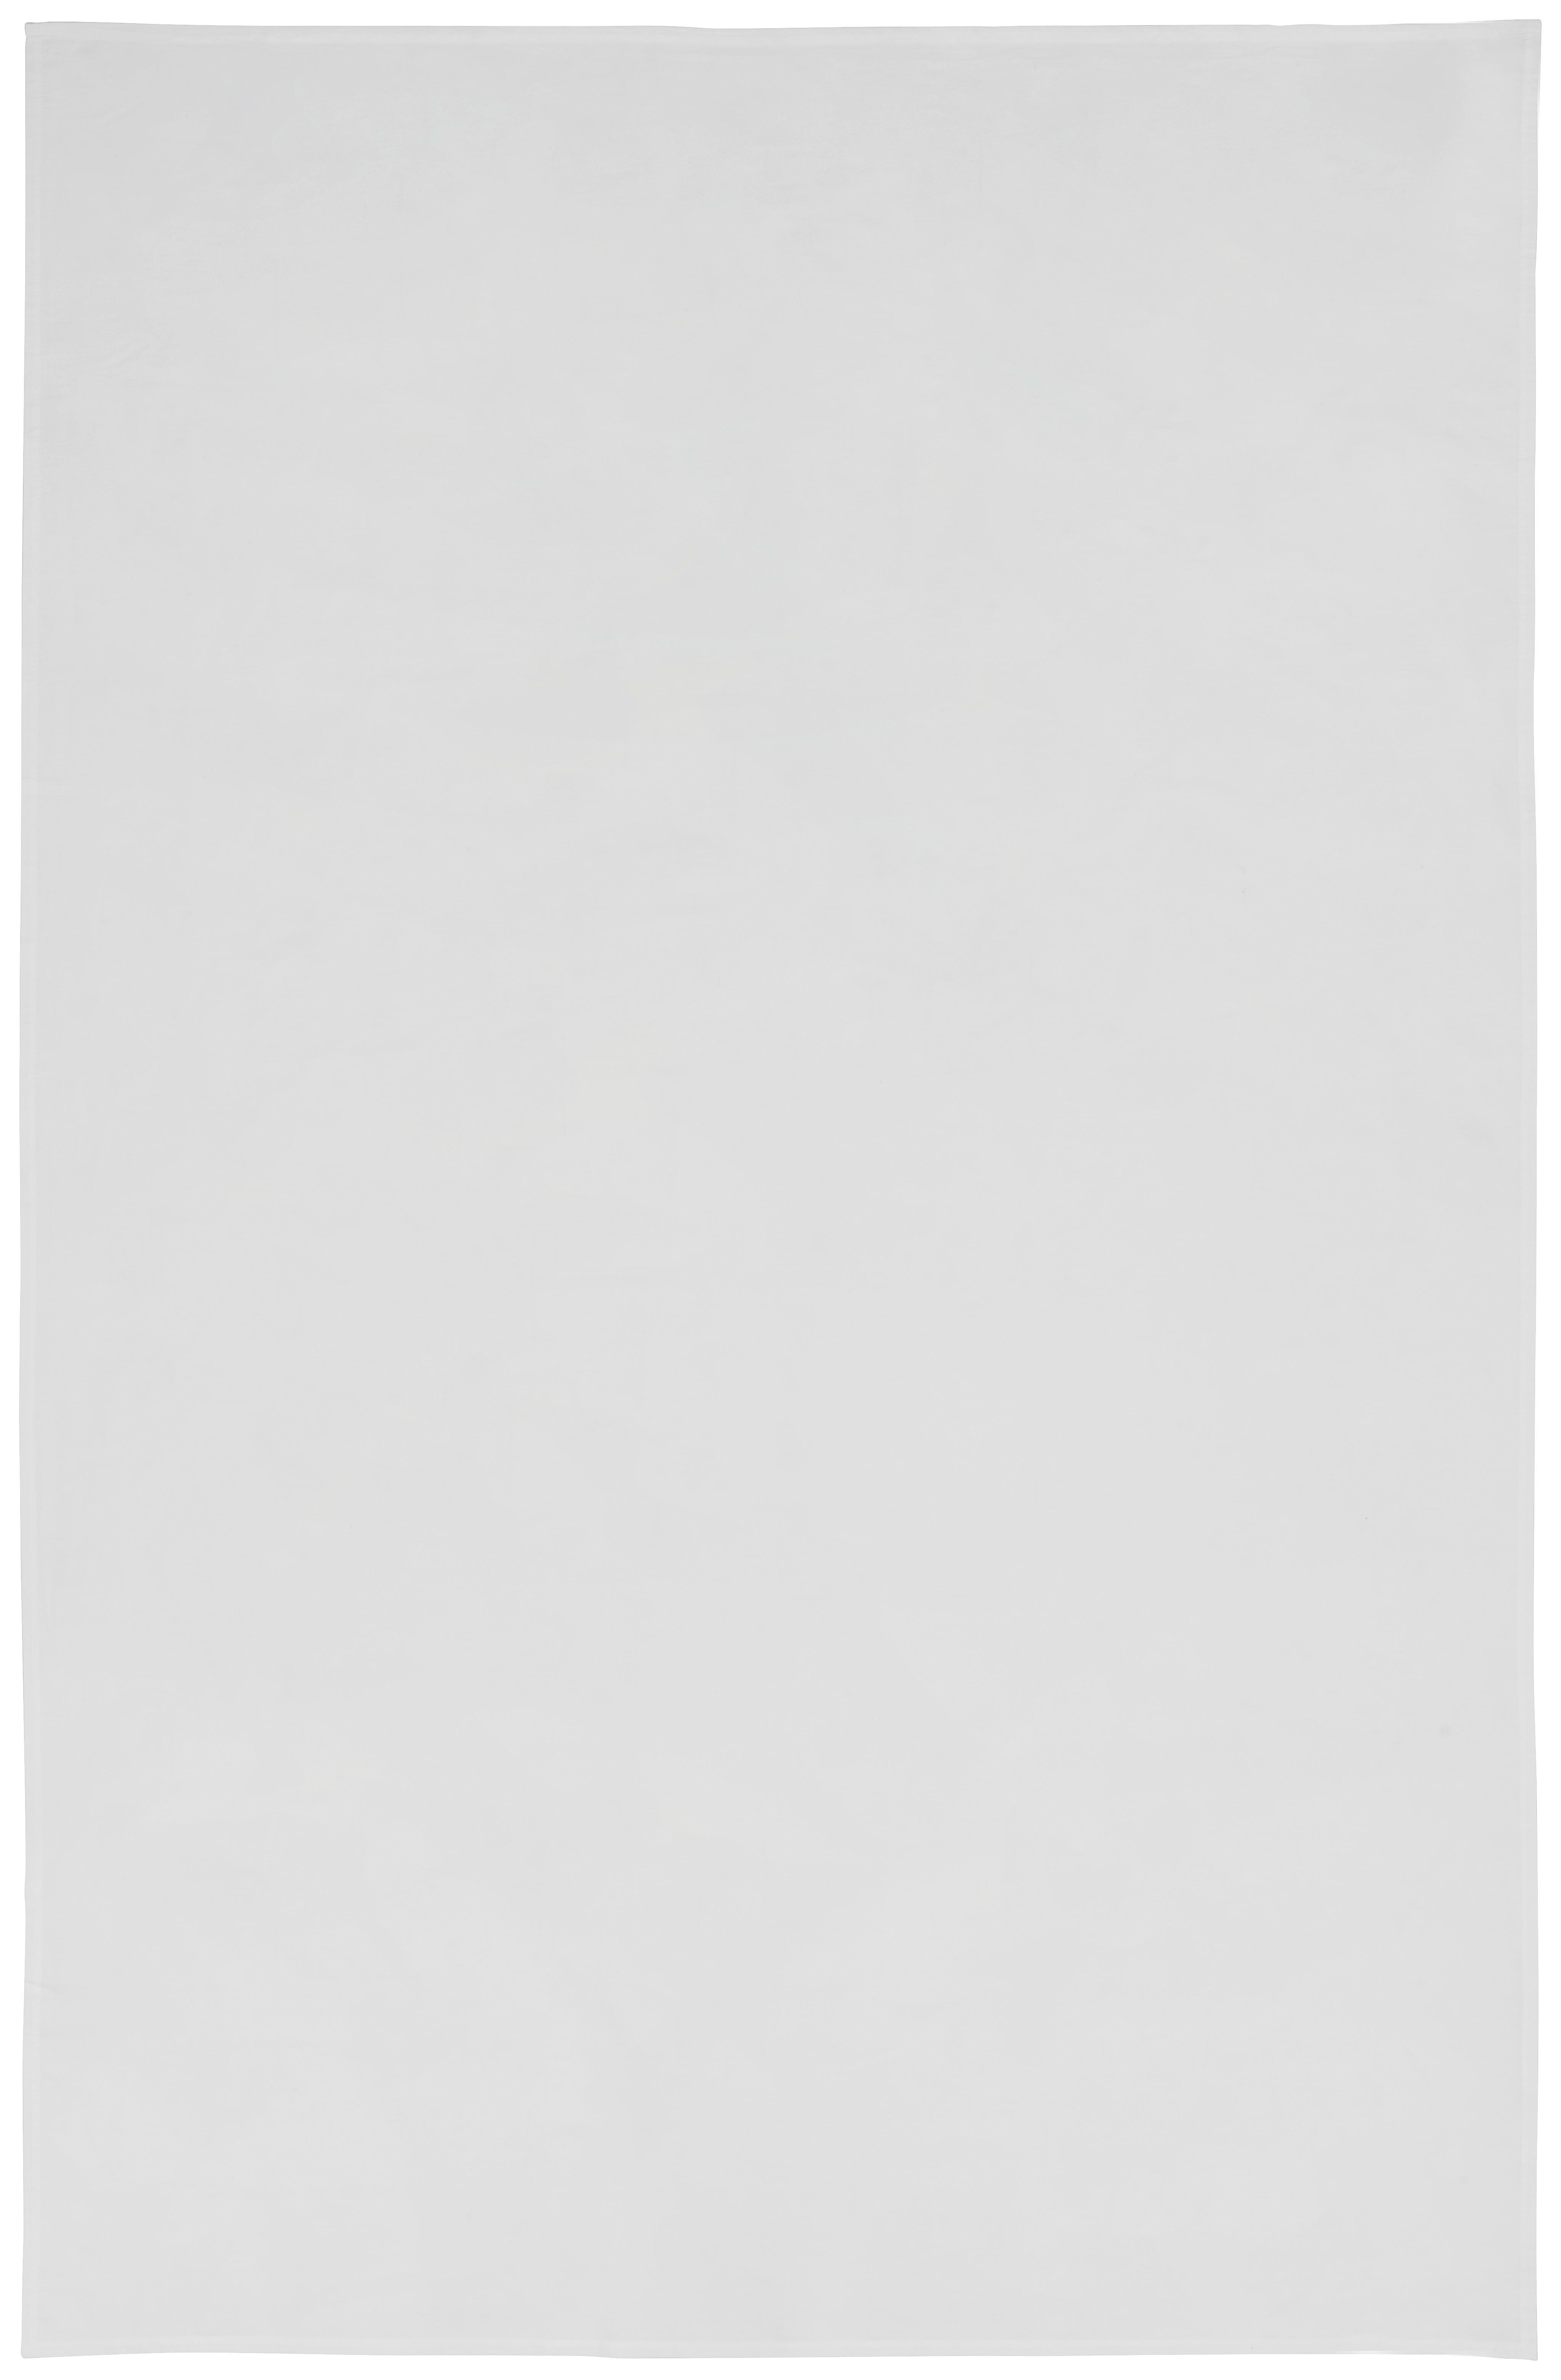 TISCHDECKE 140/220 cm   - Weiß, Basics, Textil (140/220cm) - Bio:Vio